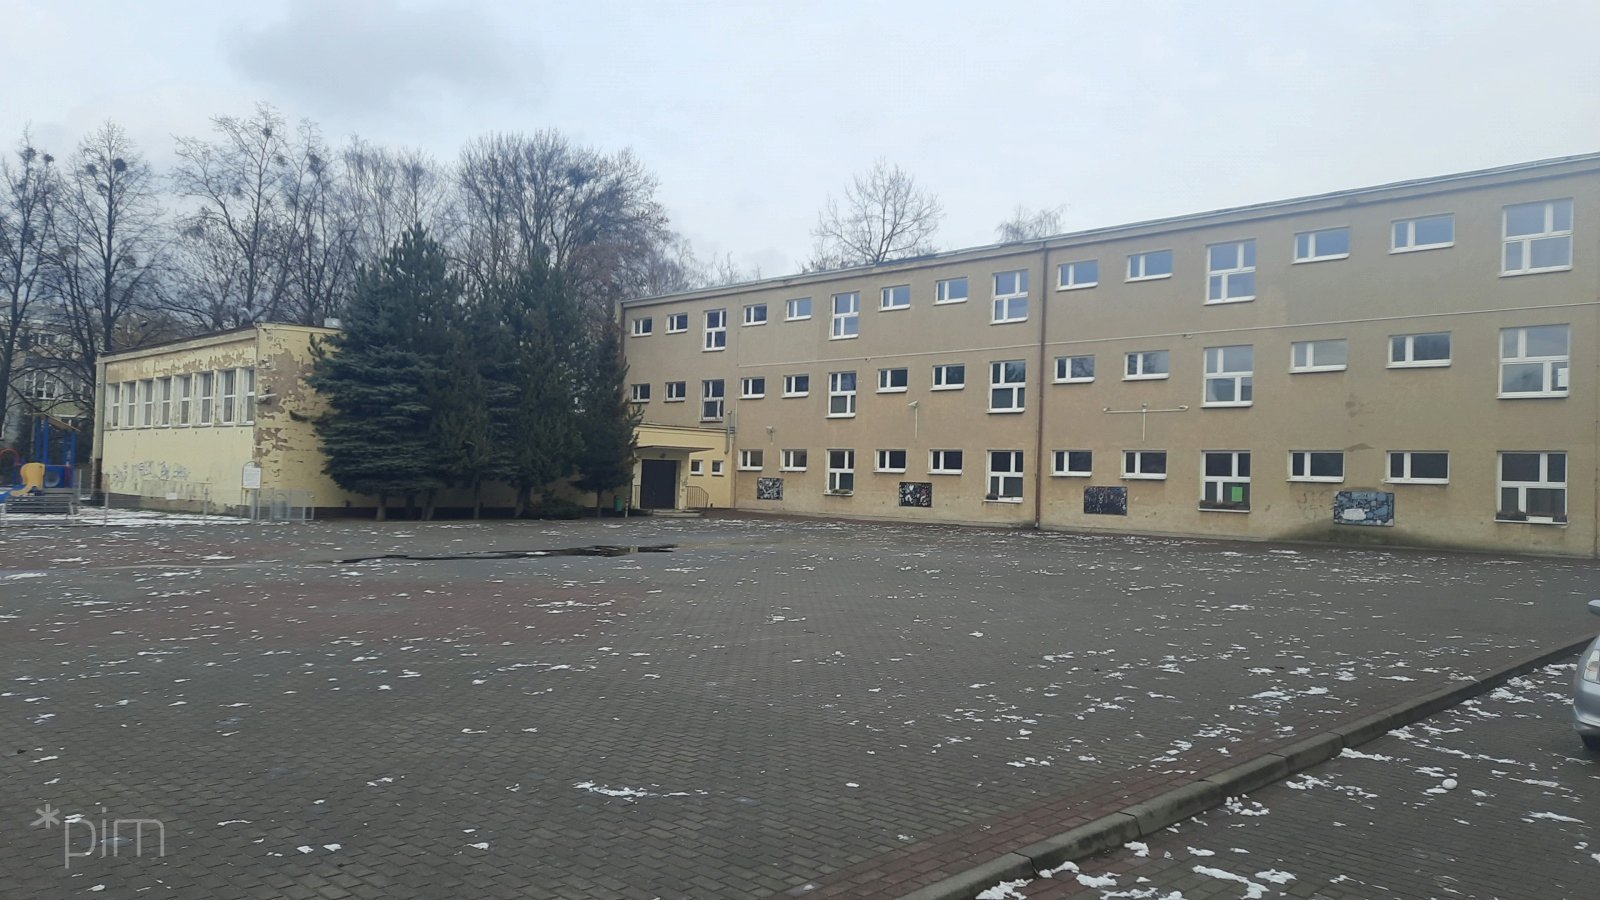 Trzy szkoły przejdą w tym roku termomodernizację: na osiedlu Oświecenia, przy ul. Dmowskiego oraz przy ul. Sochaczewskiej fot PIM